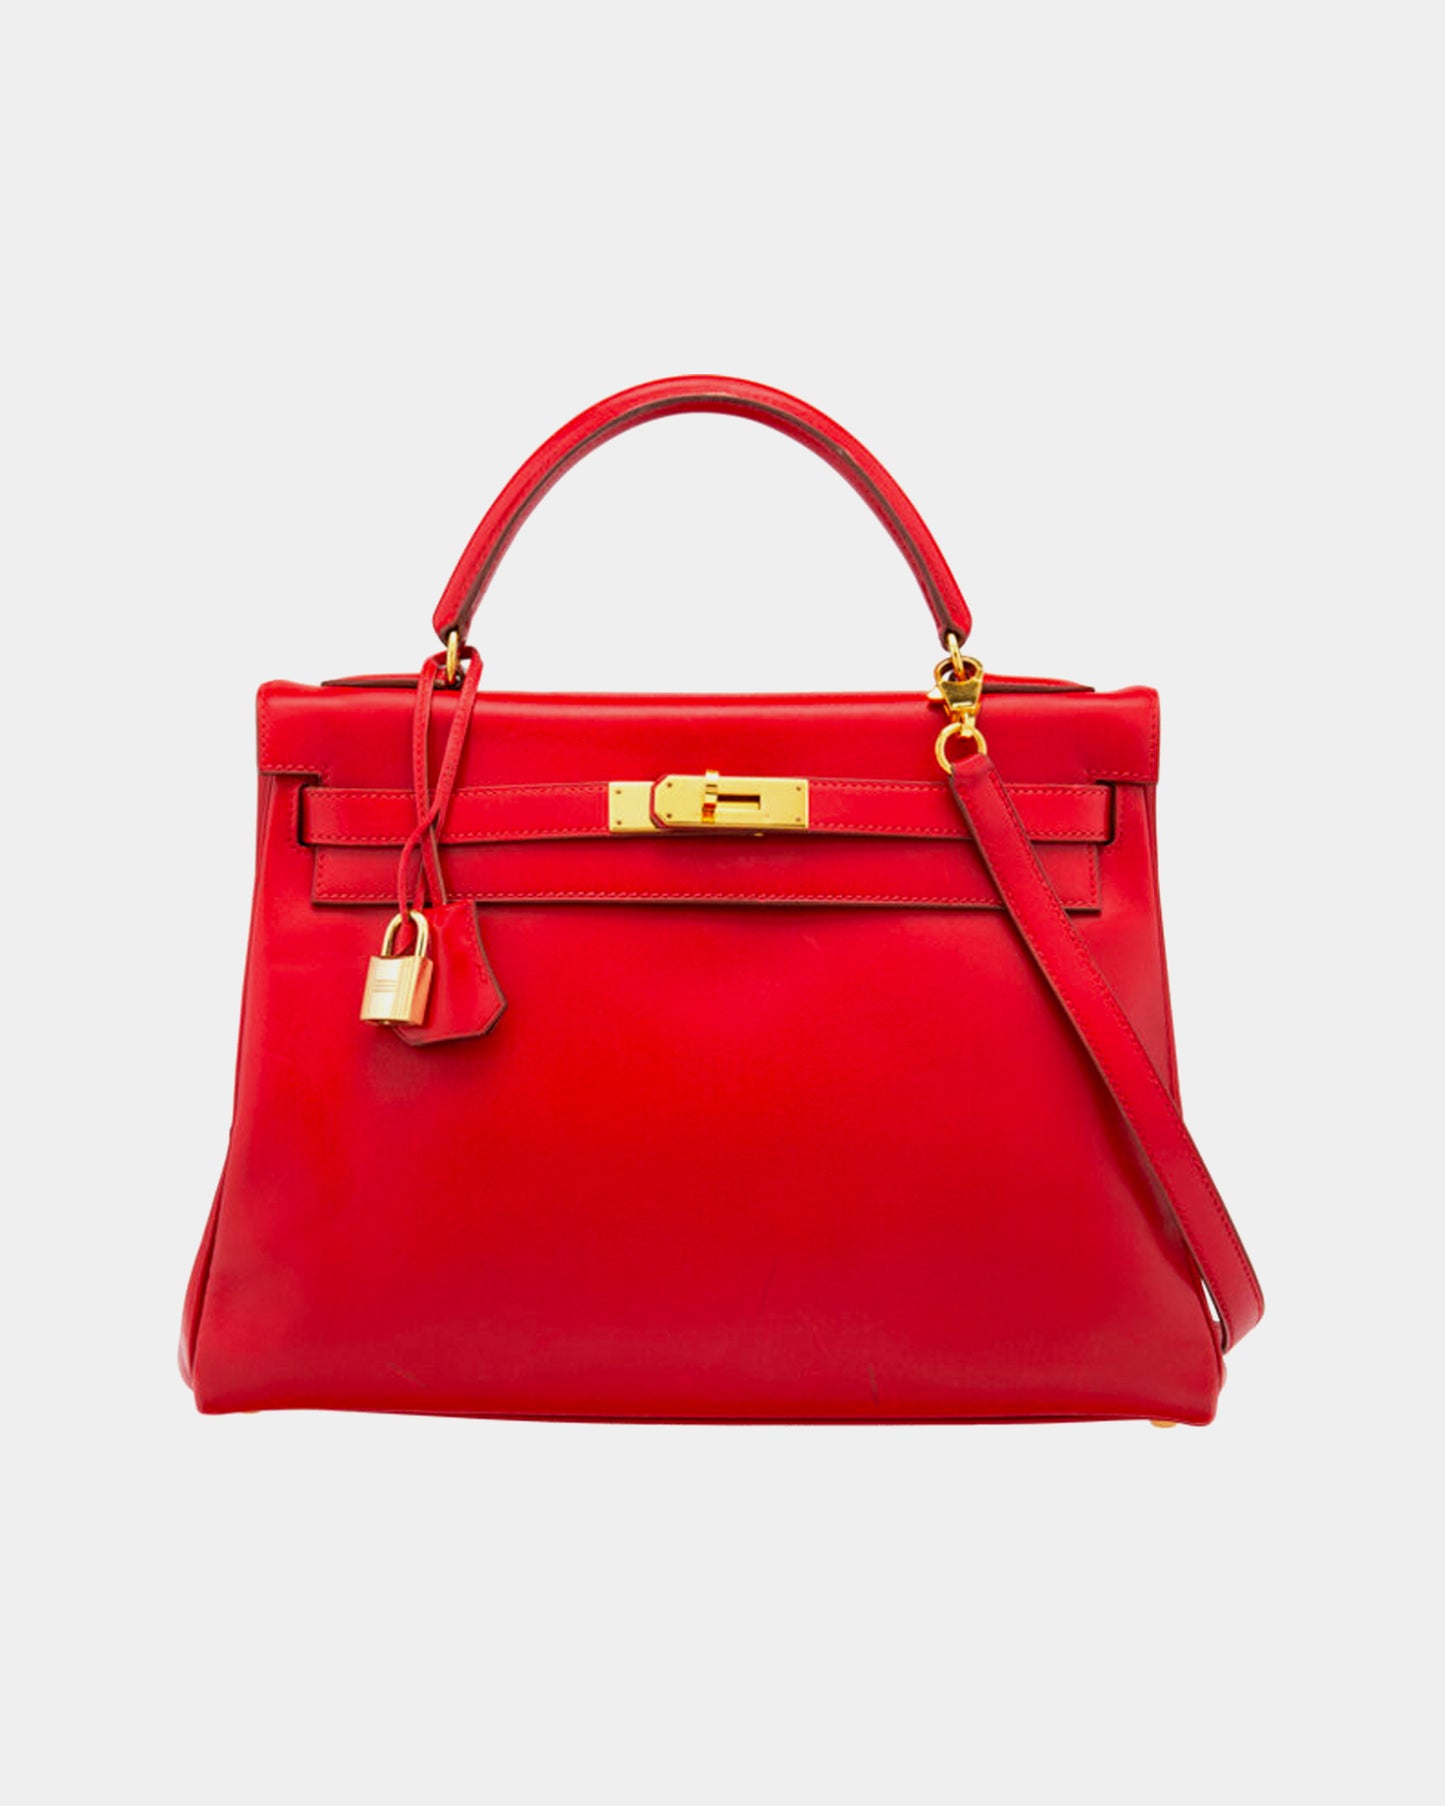 Hermès Vintage 1995 32cm Rouge Vif Tadelakt Leather Retourne Kelly Bag with Gold Hardware